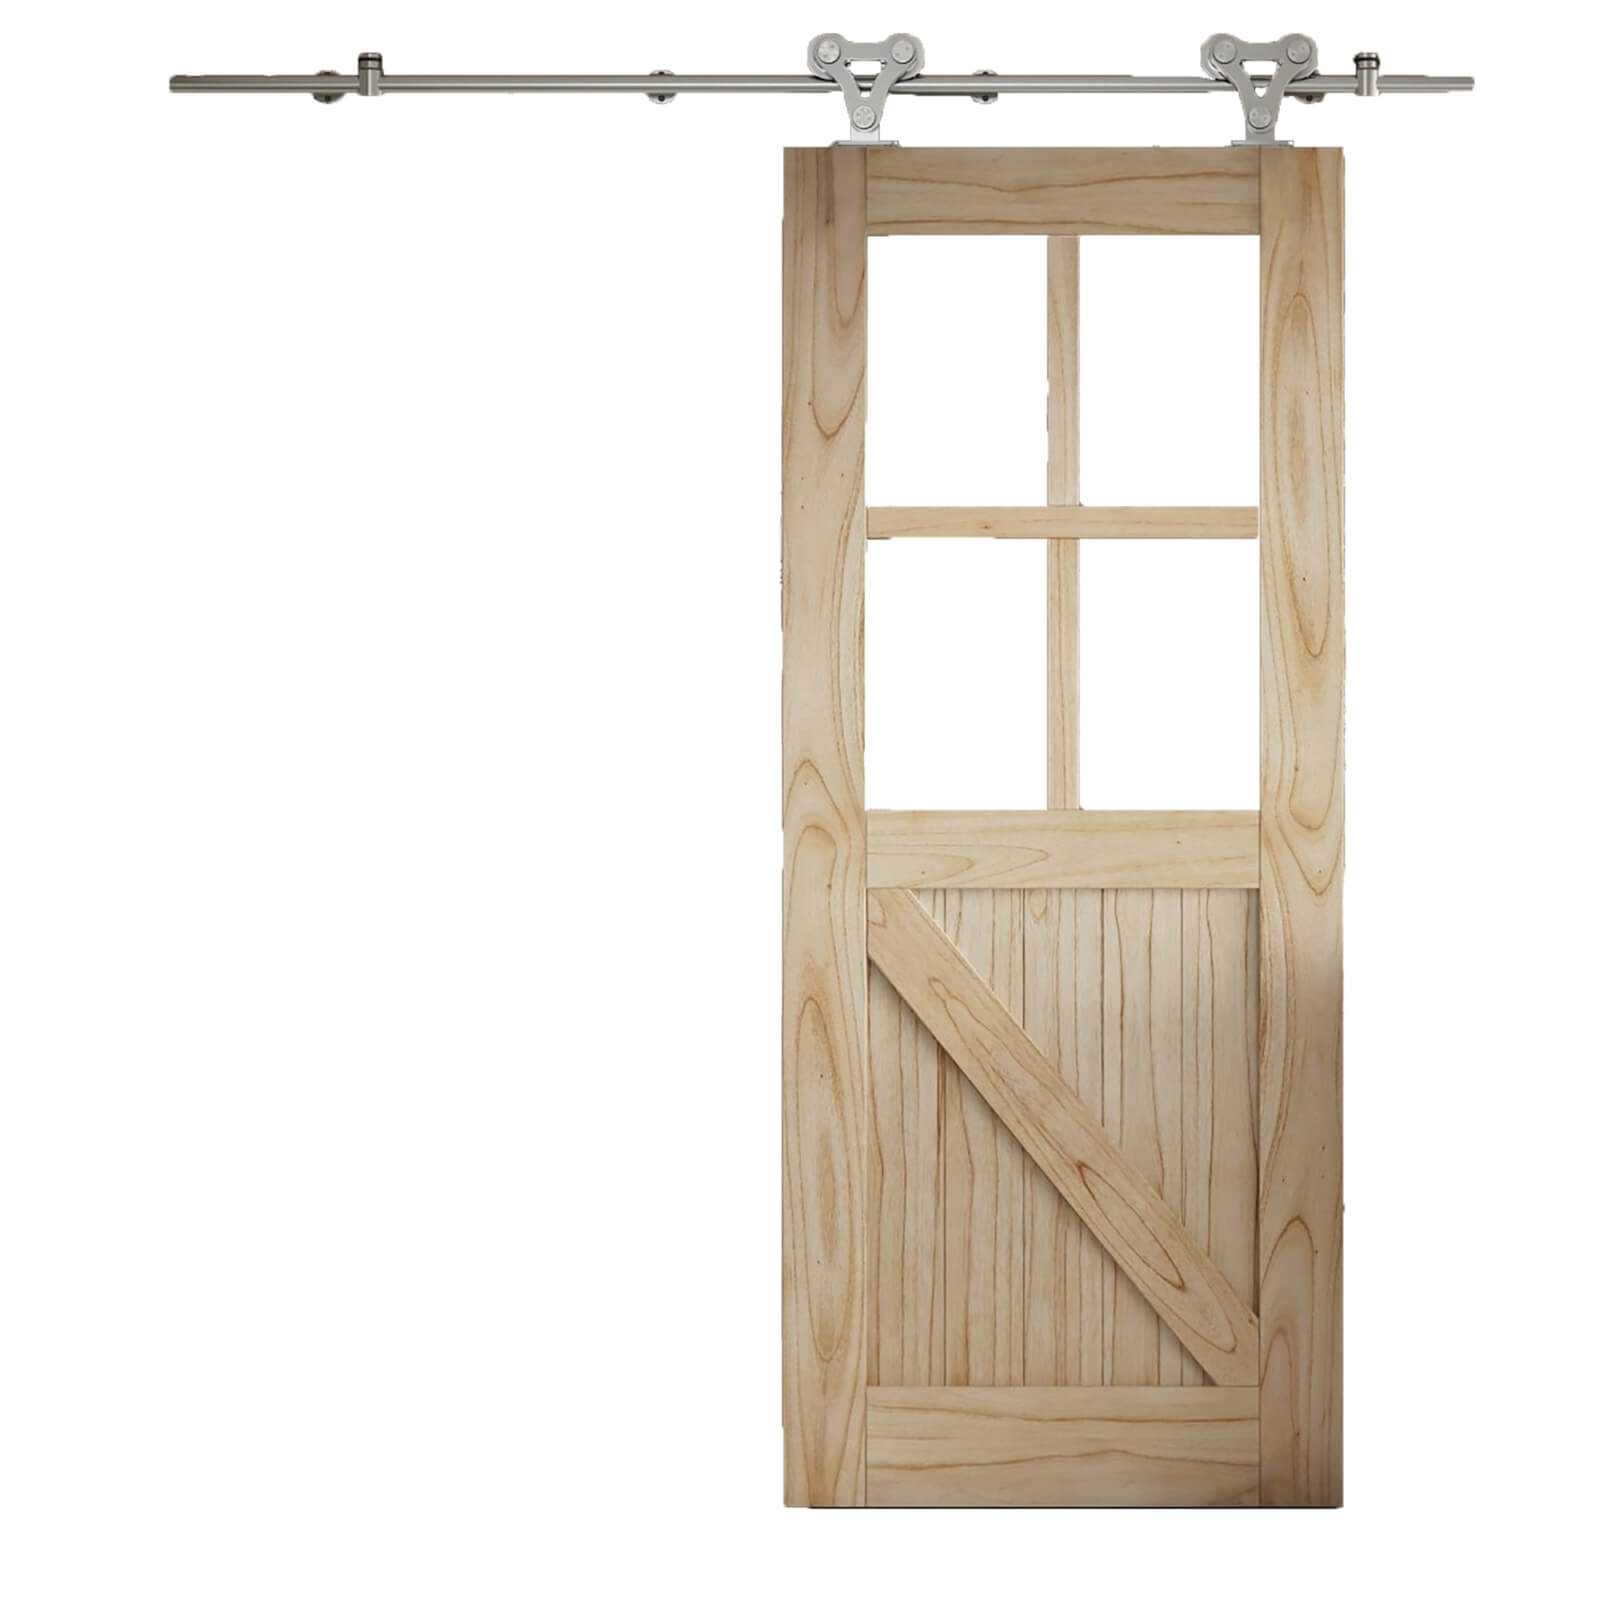 Cottage FLB Sliding Barn Clear Glazed Door with Elegant Track 2073 x 862mm